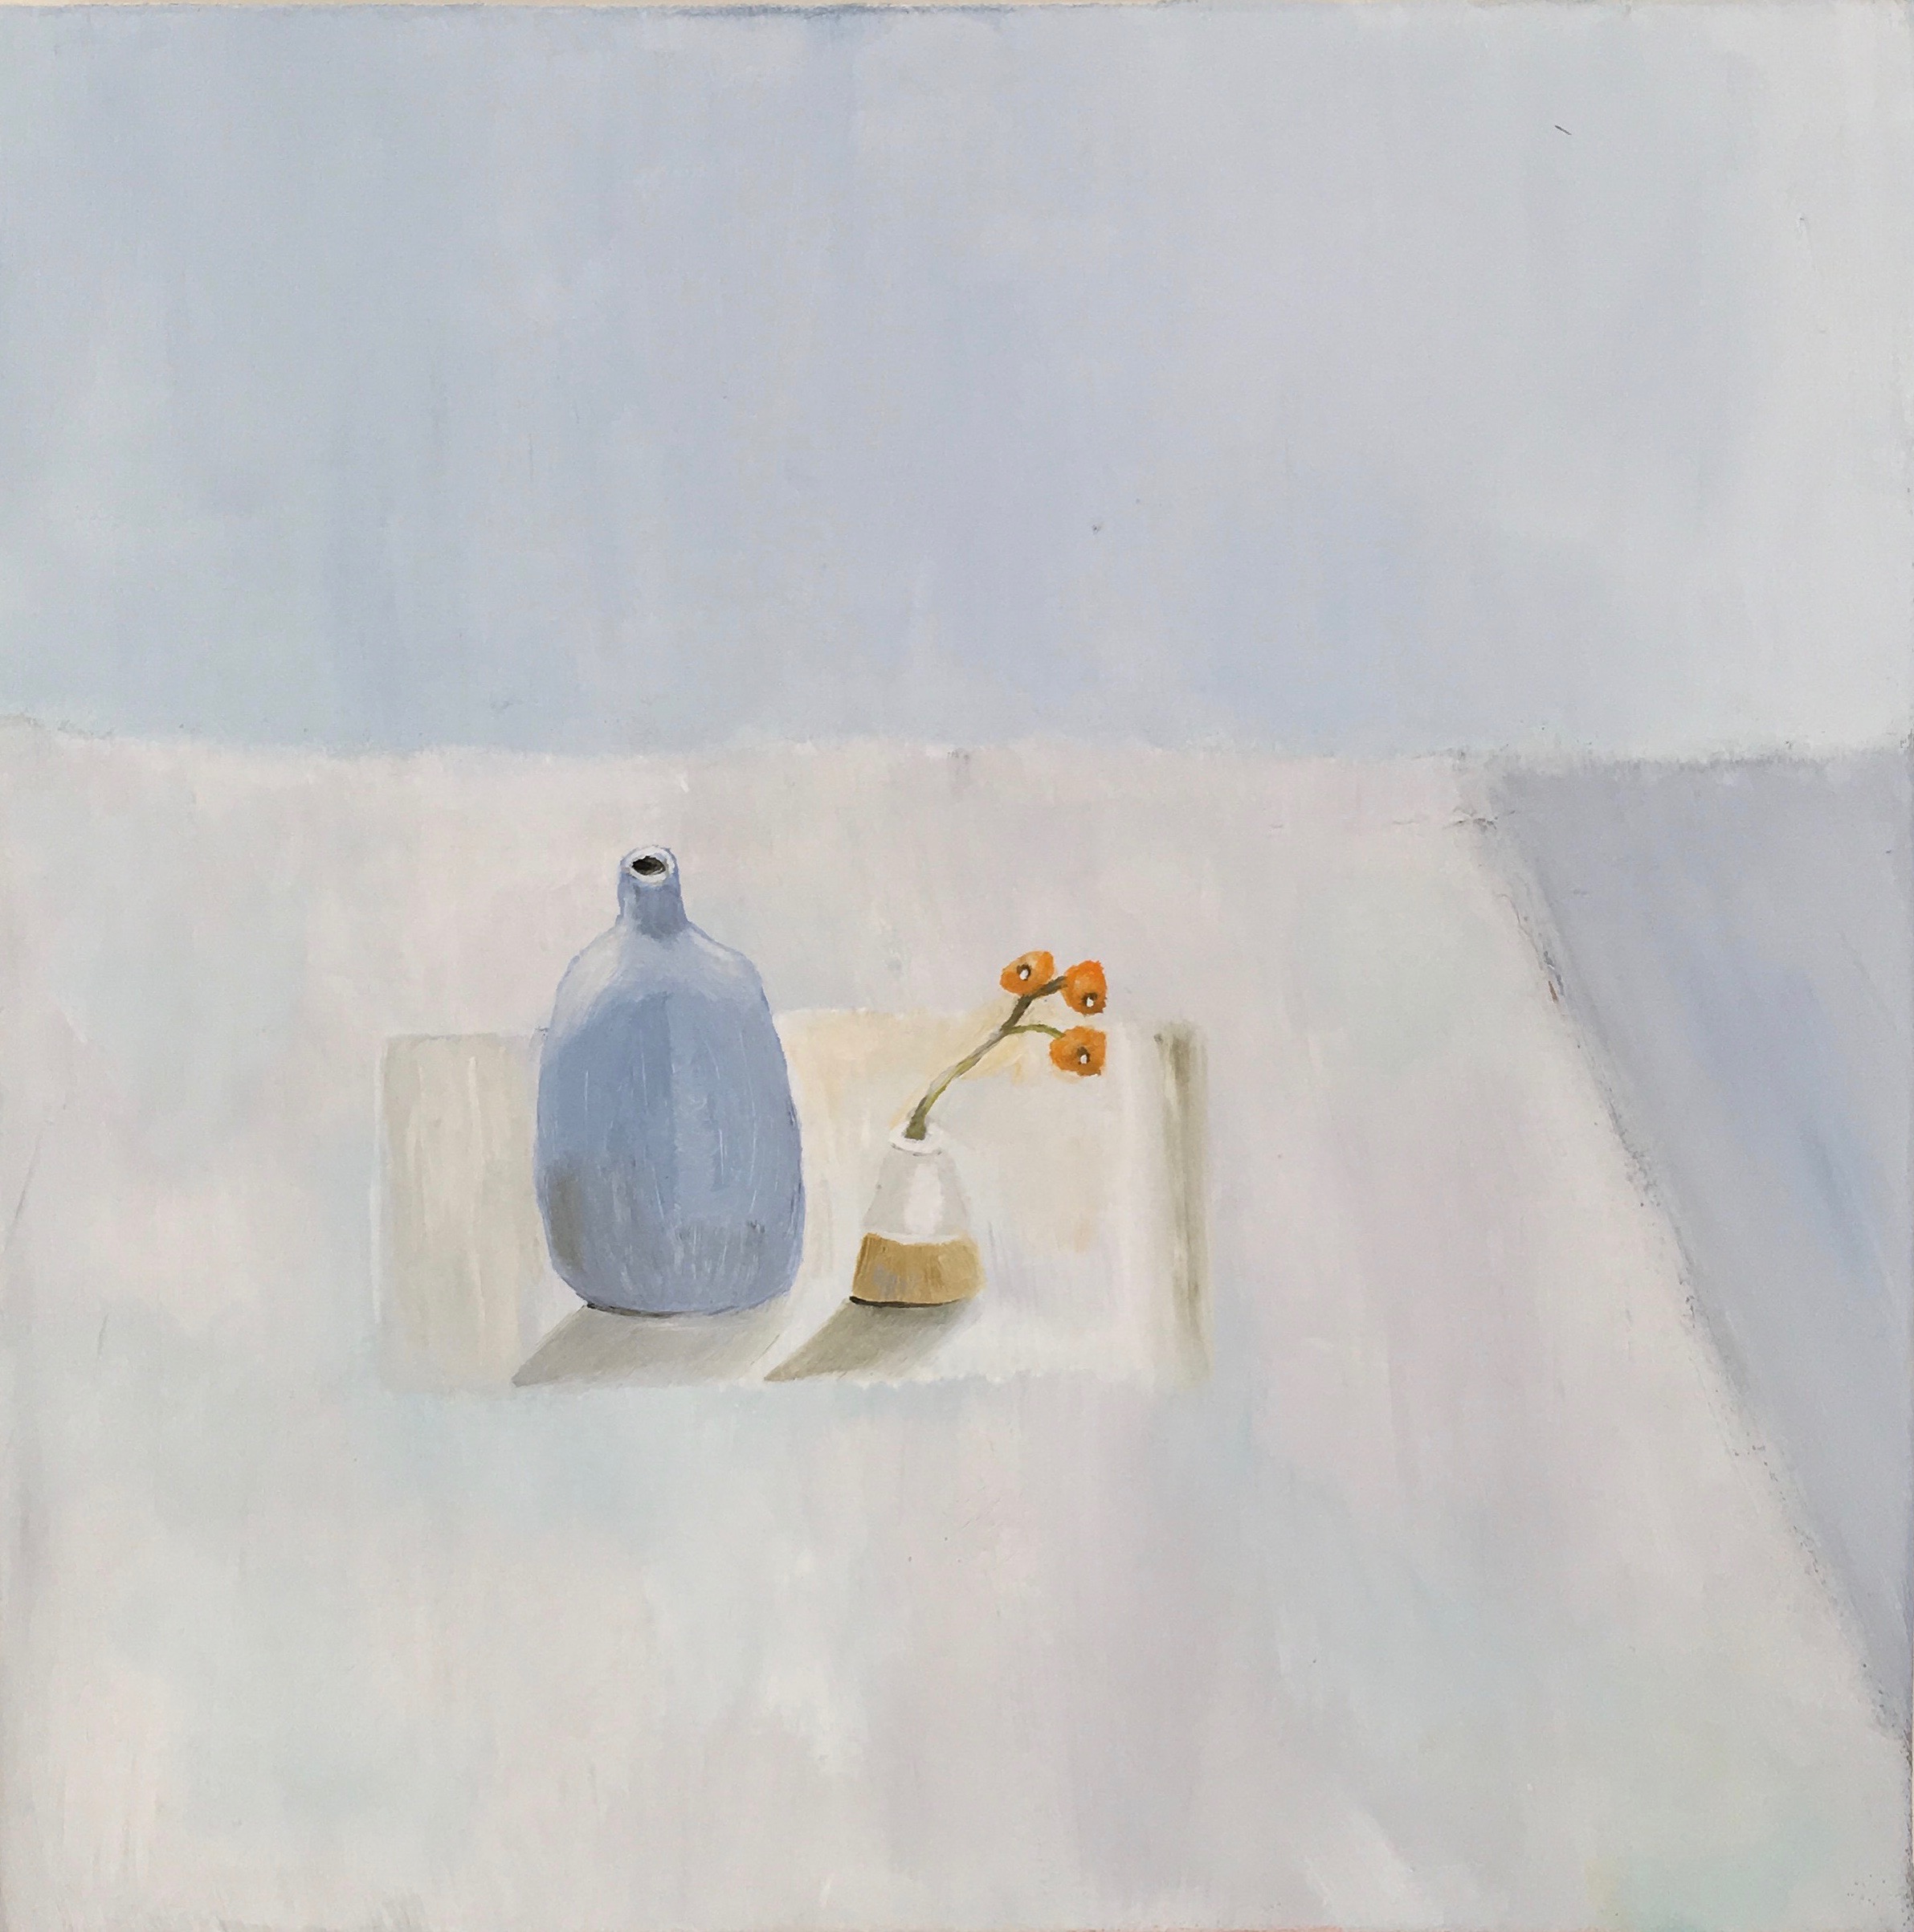 Kathy-Leeds-artist-Blue jug